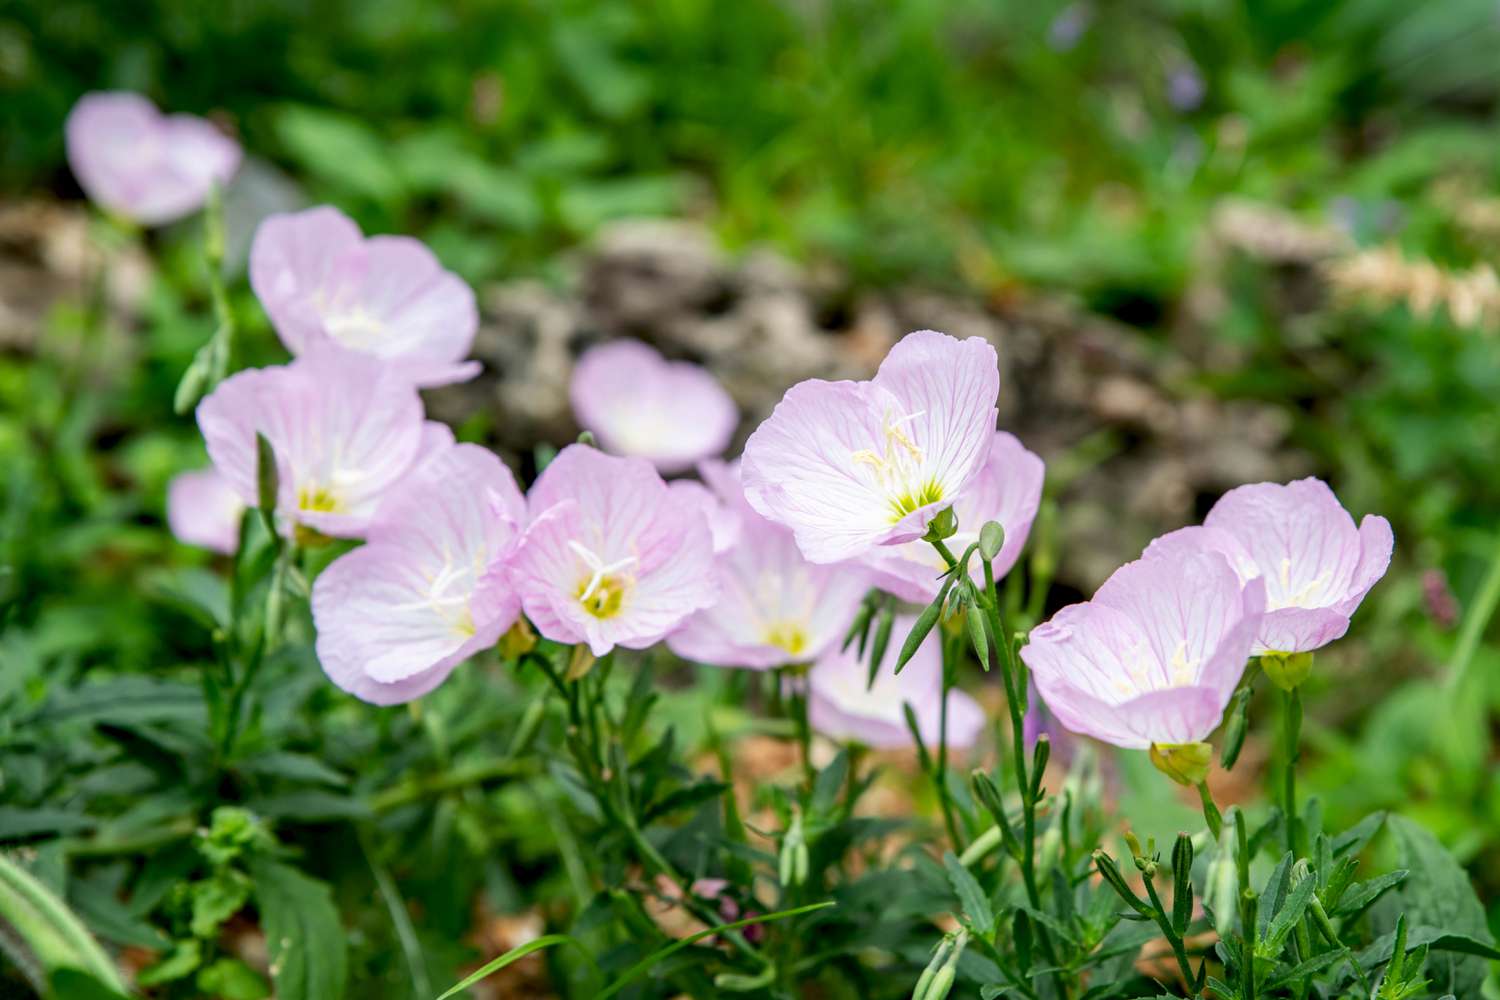 Flores de onagra rosa con pétalos rosa pálido y blanco sobre finos tallos verdes